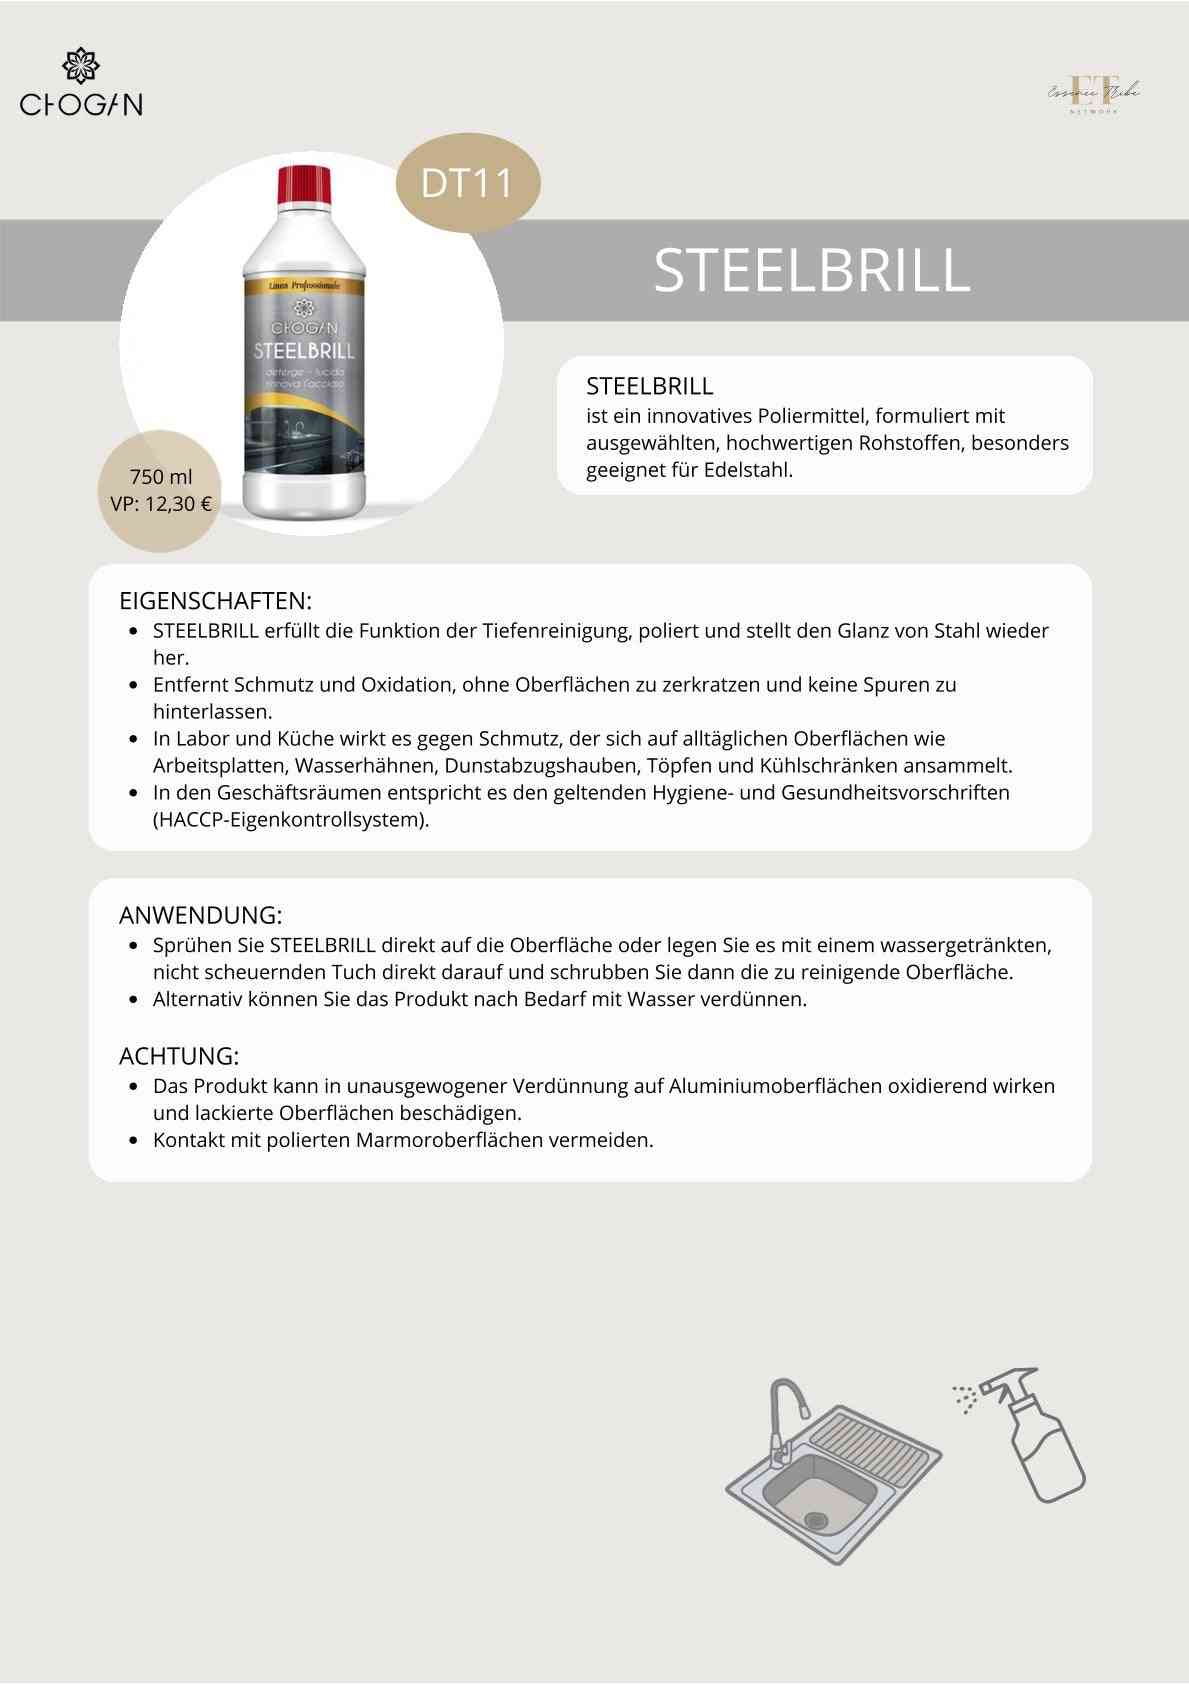 Steel Brill – nettoyant pour acier inoxydable pour un éclat radieux